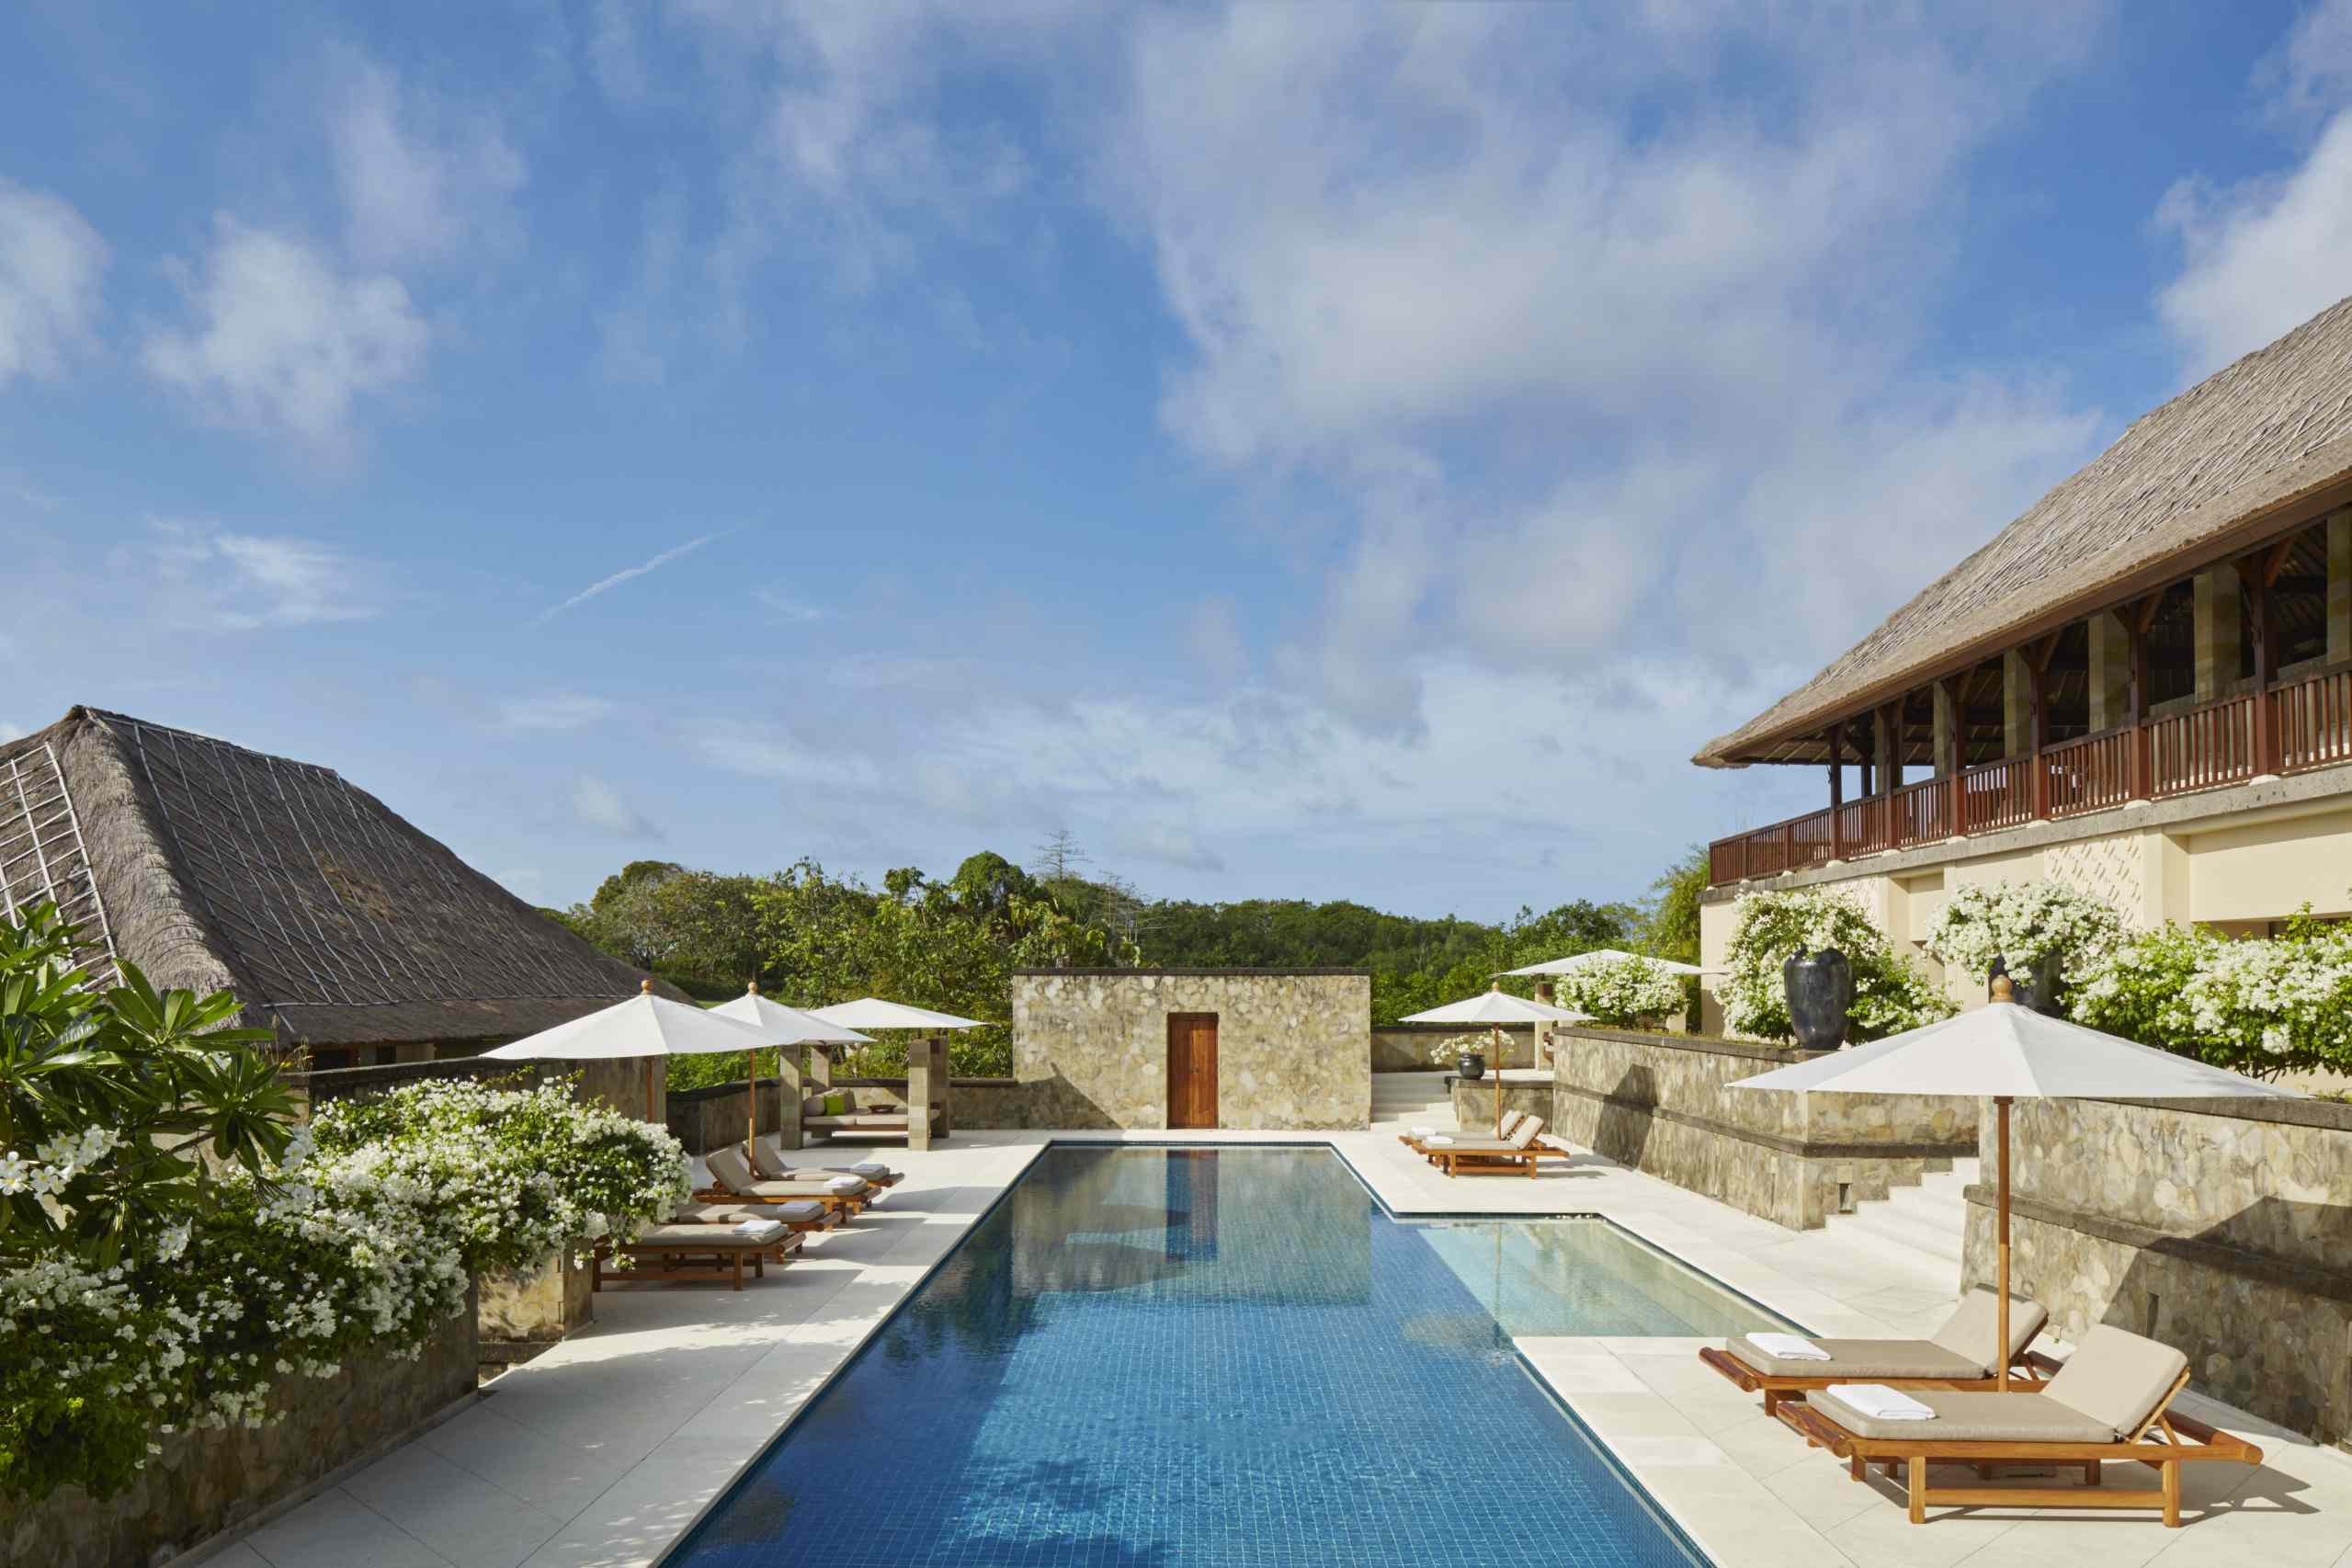 入住巴厘岛5星级The Stones Hotel – Legian Bali，给你放松身心的舒适环境 | Come On Lets ...